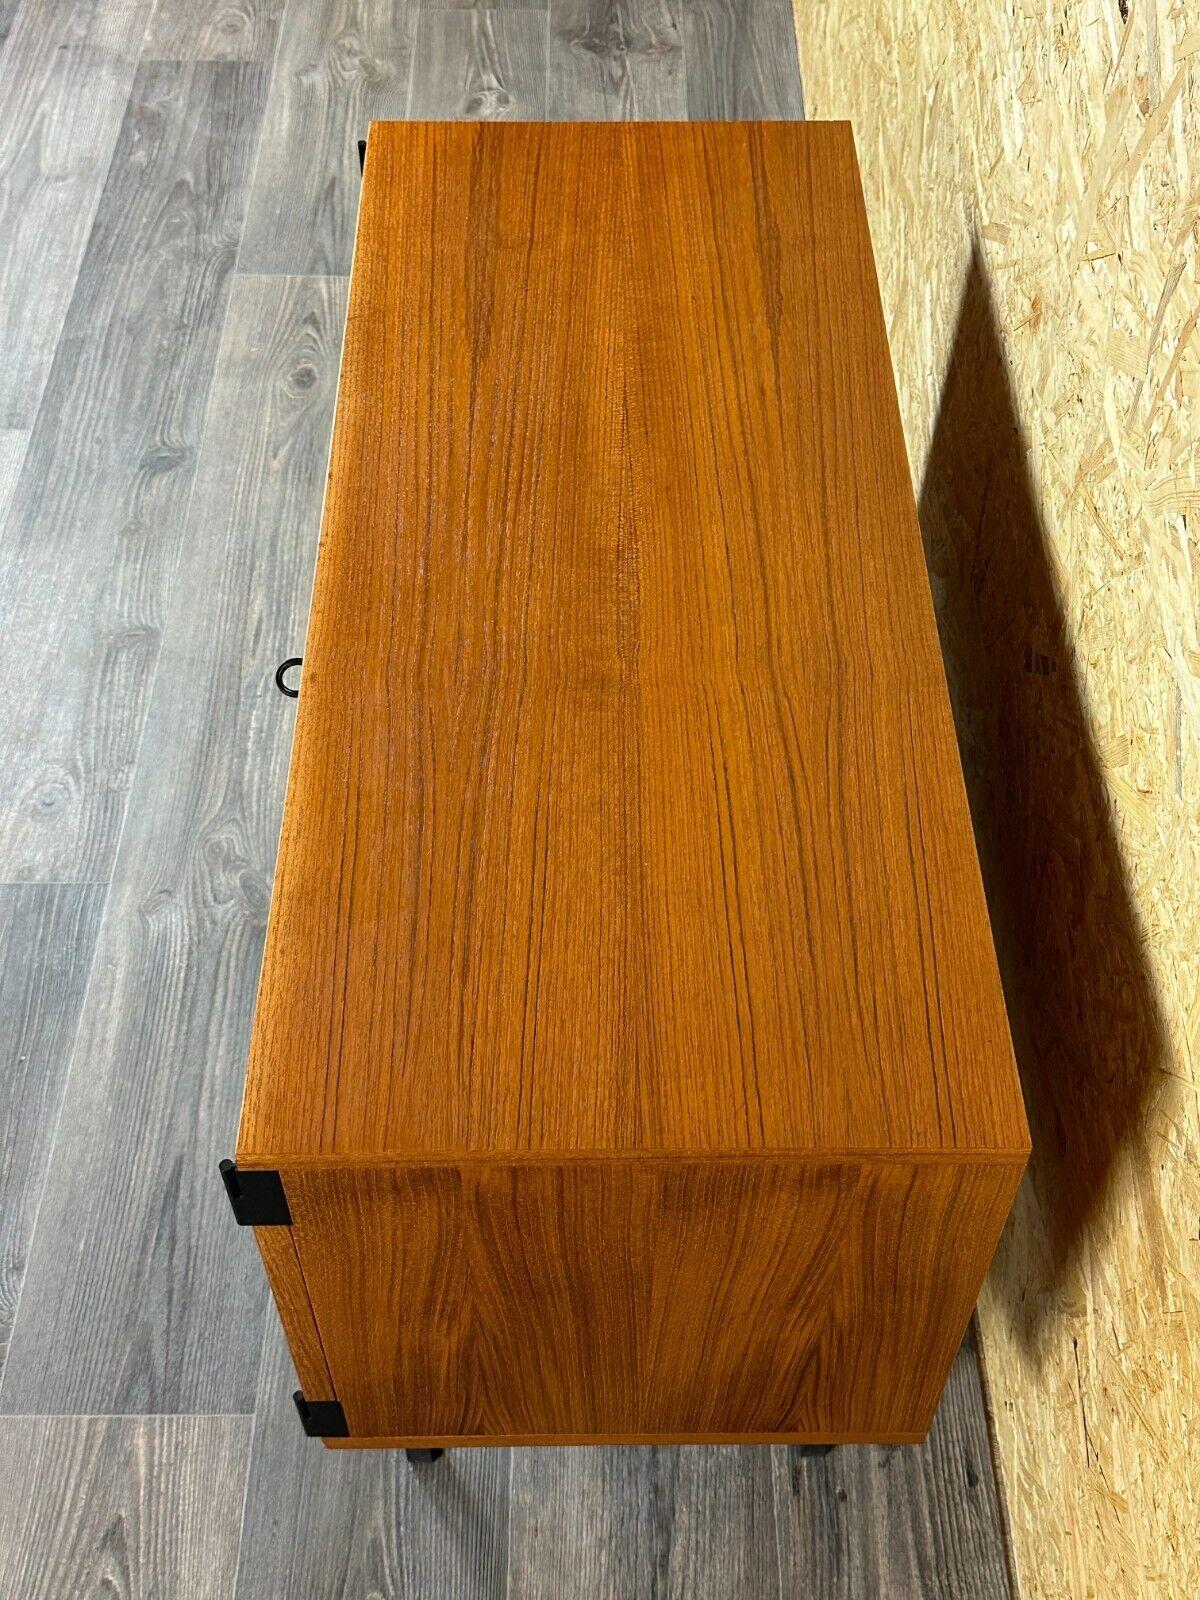 60s 70s teak sideboard cabinet Rego Mobile Danish Modern Design For Sale 2